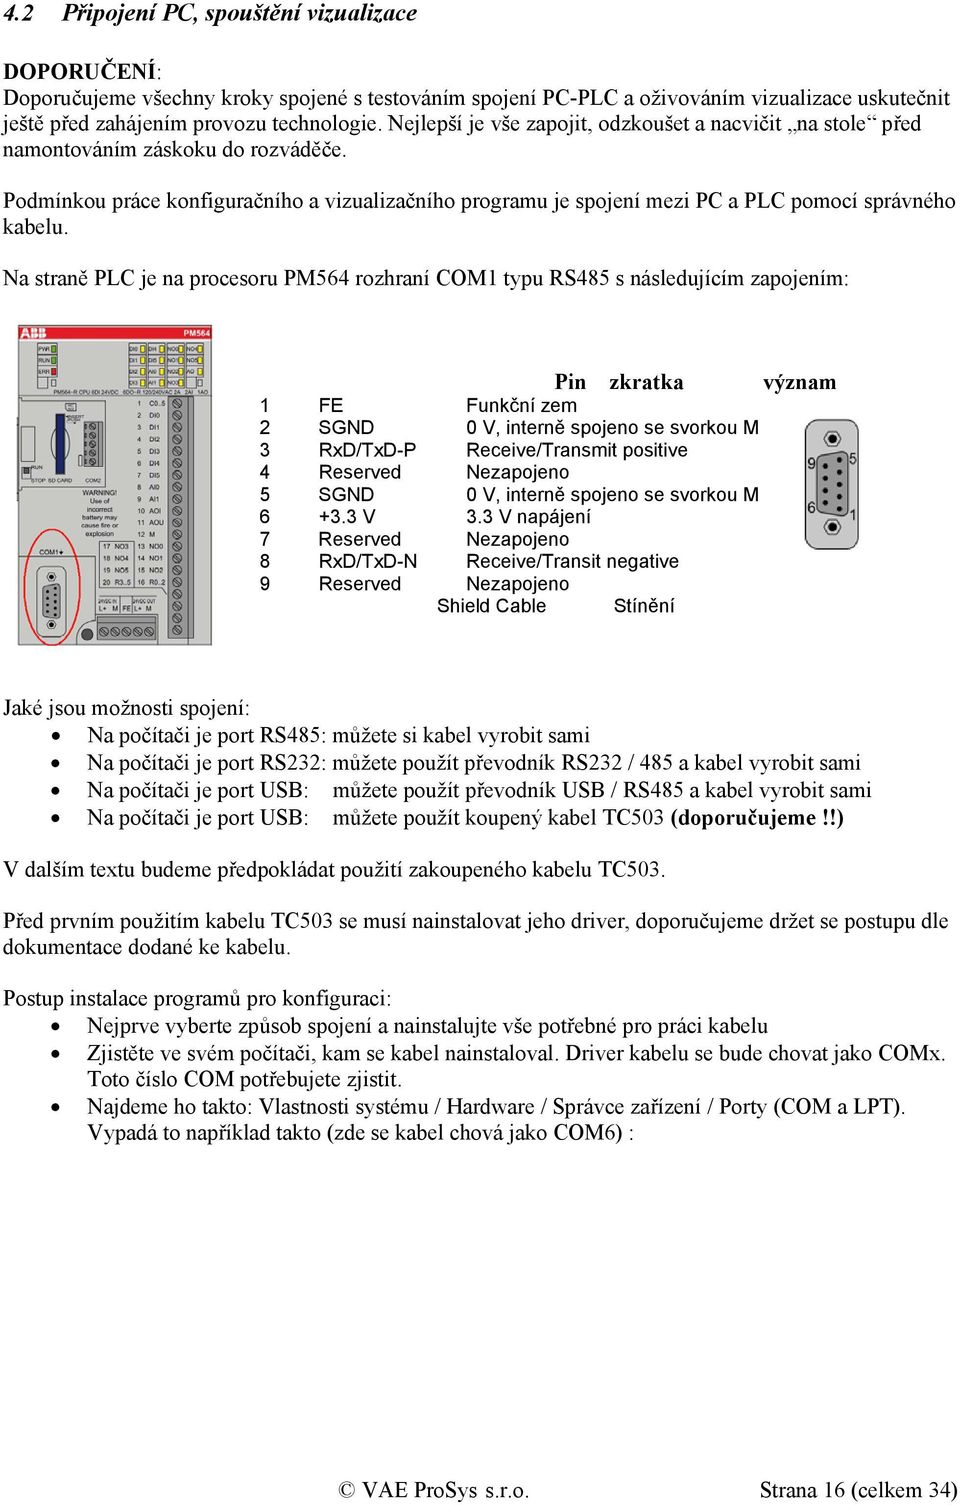 Podmínkou práce konfiguračního a vizualizačního programu je spojení mezi PC a PLC pomocí správného kabelu.